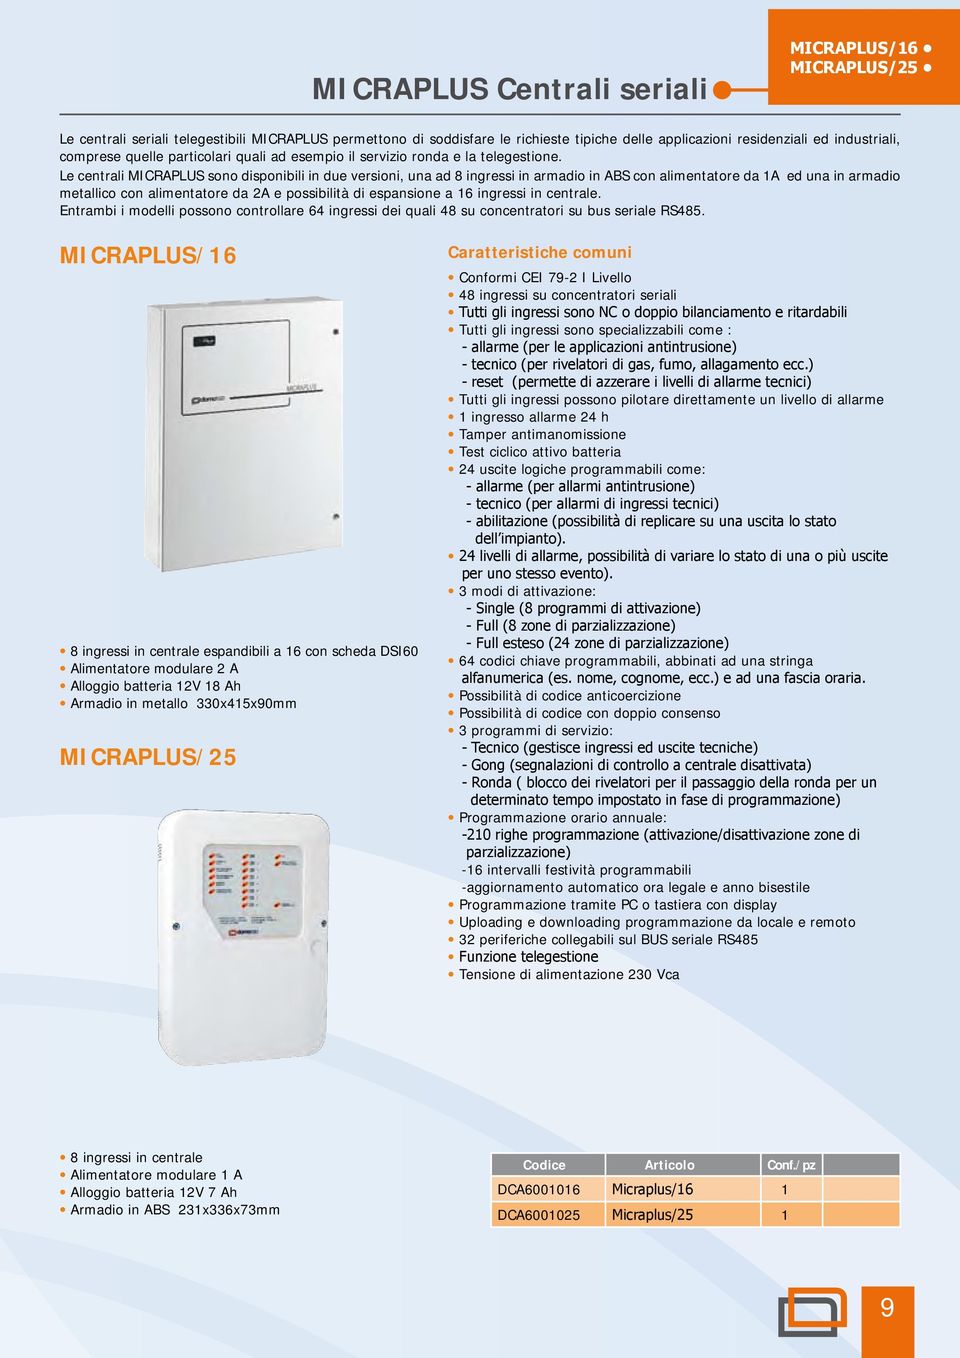 Le centrali MICRAPLUS sono disponibili in due versioni, una ad 8 ingressi in armadio in ABS con alimentatore da 1A ed una in armadio metallico con alimentatore da 2A e possibilità di espansione a 16